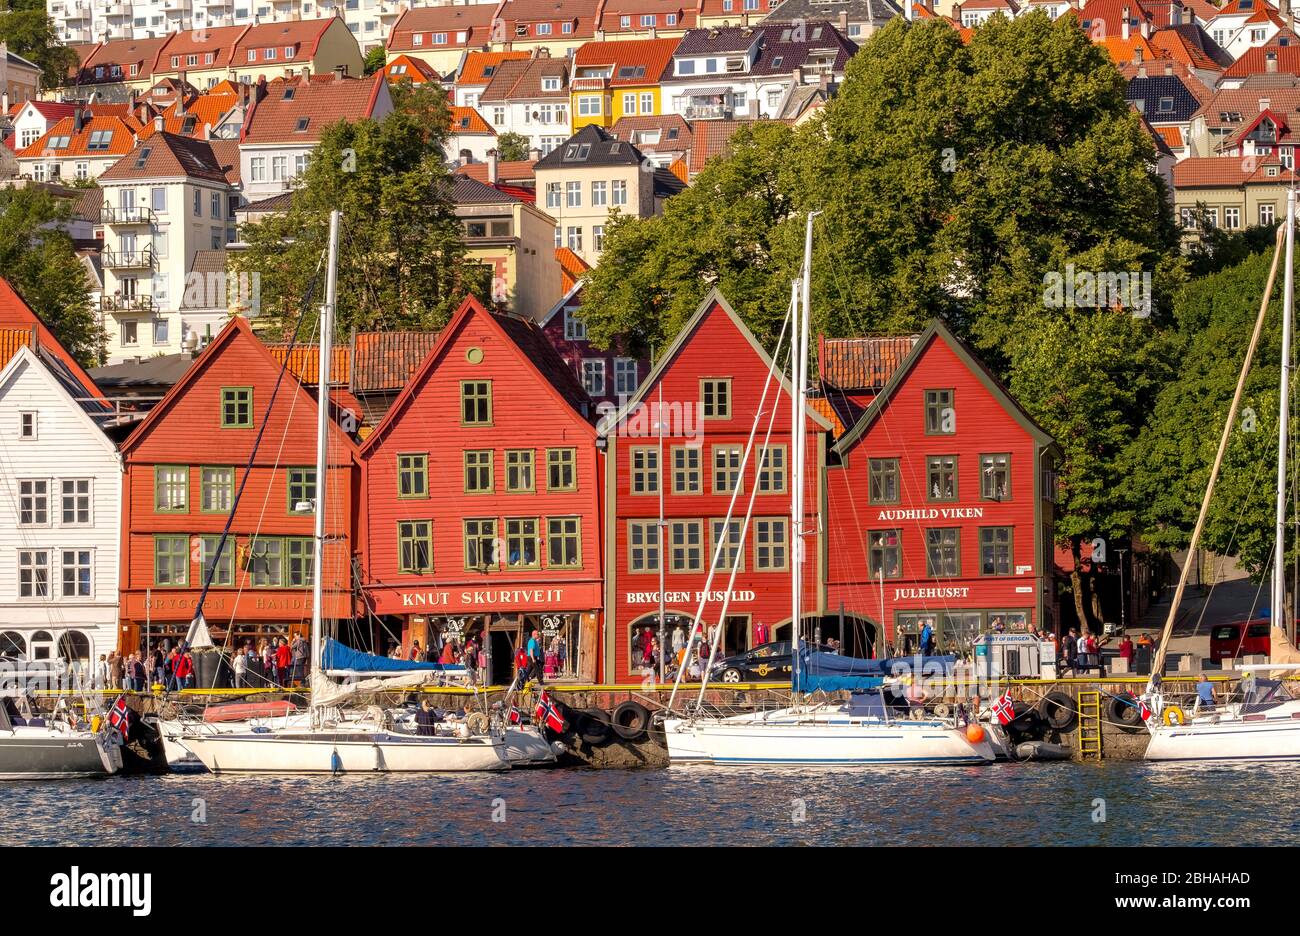 Nordsee, dietro una colorata case in legno fronte con allegata barche a vela nel porto di Bryggen, circa altre case della città, Bergen, Hordaland, Norvegia, Scandinavia, Europa Foto Stock